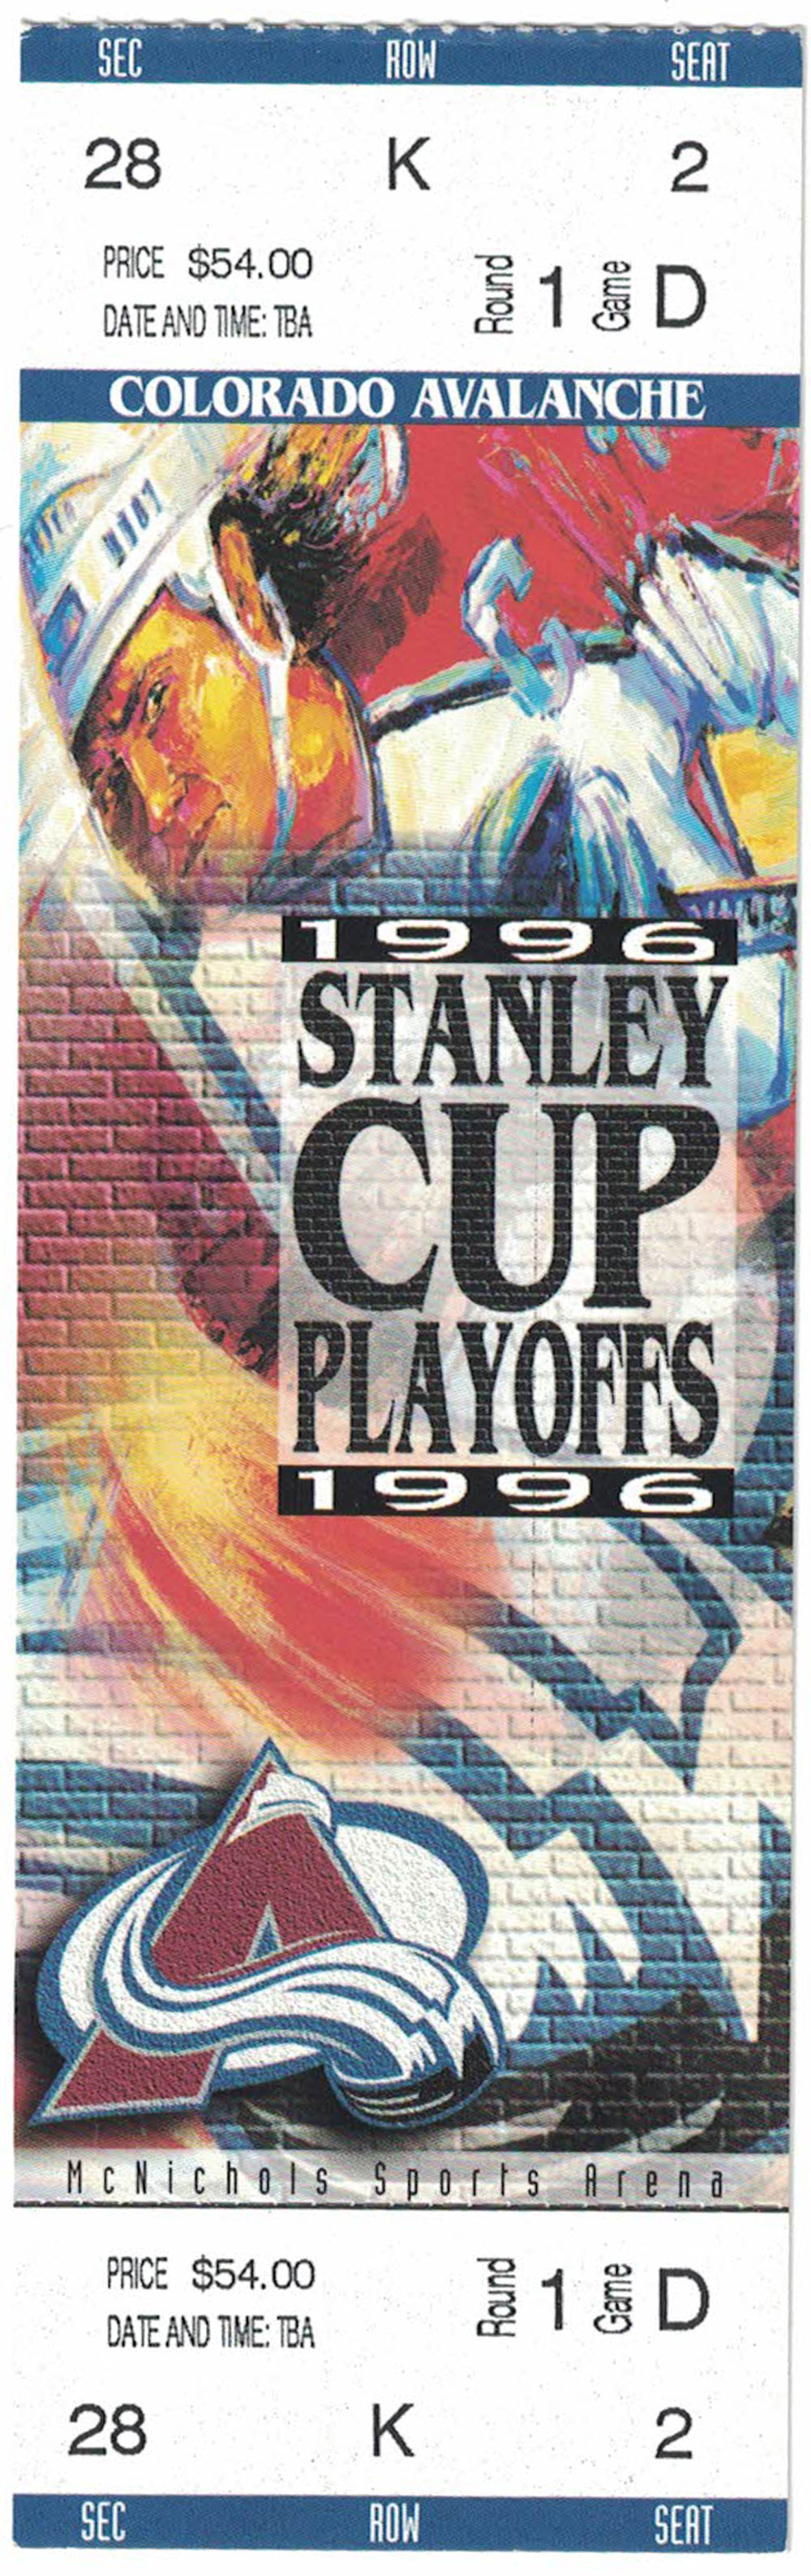 Colorado Avalanche 1996 Stanley Cup Playoffs Round 1 Game 4 Ticket 27463